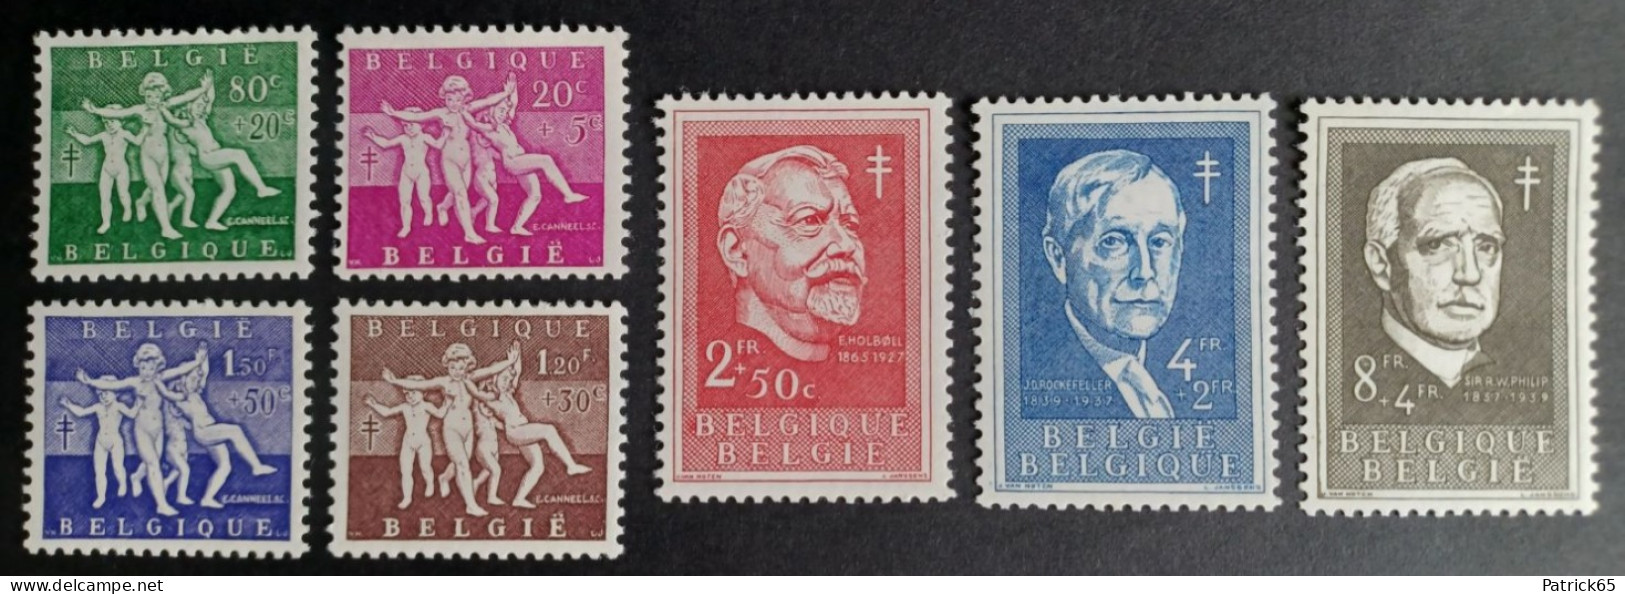 Belgie 1955 Antiteringzegels "Reeks Lentevreugde" Obp-979/985 MNH-Postfris - Unused Stamps